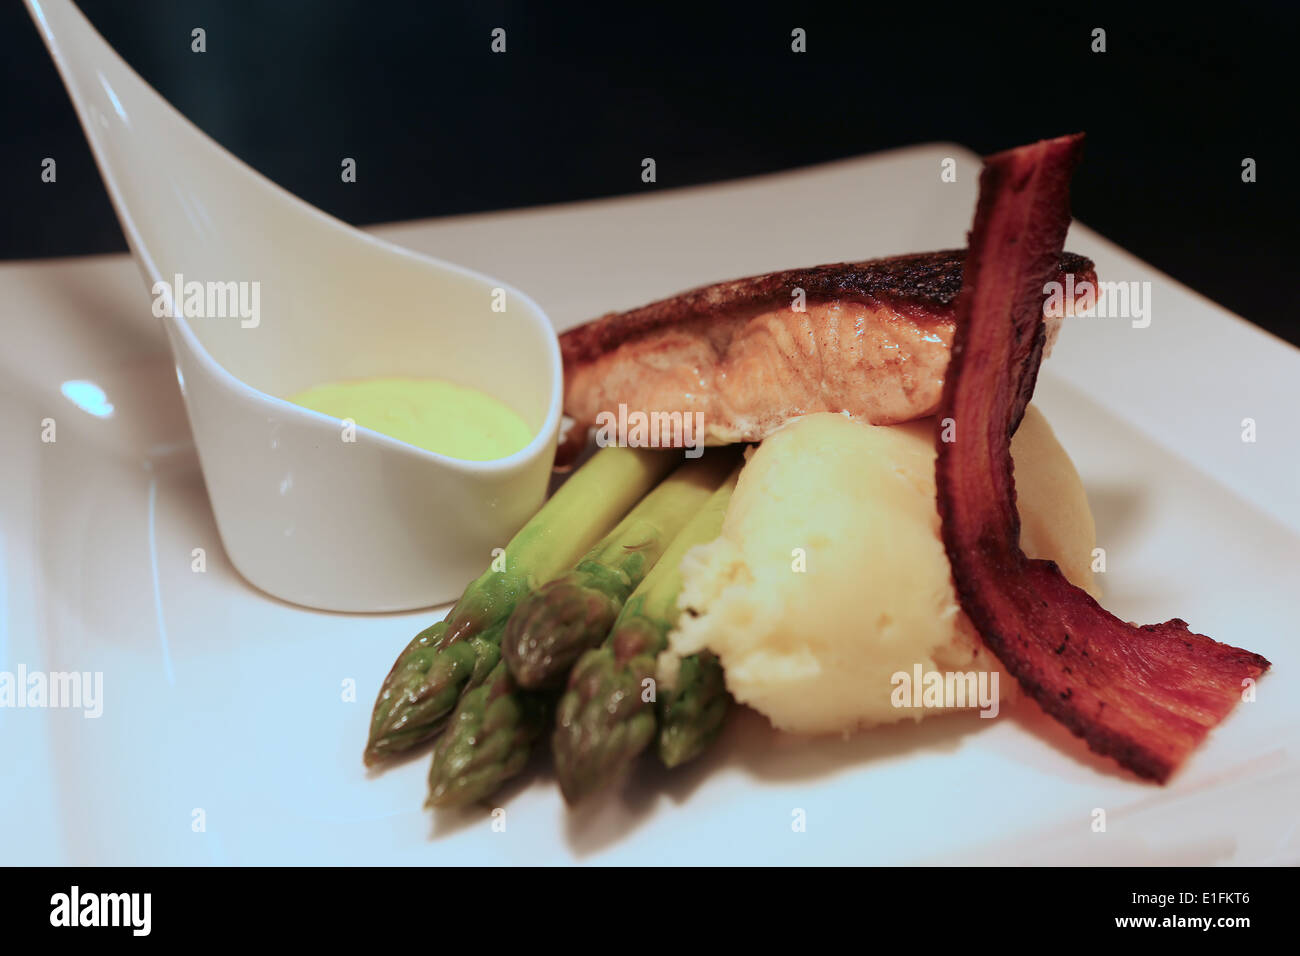 Purée de pomme de terre saumon photographie alimentaire bacon sauce asperges recette alimentaire Banque D'Images